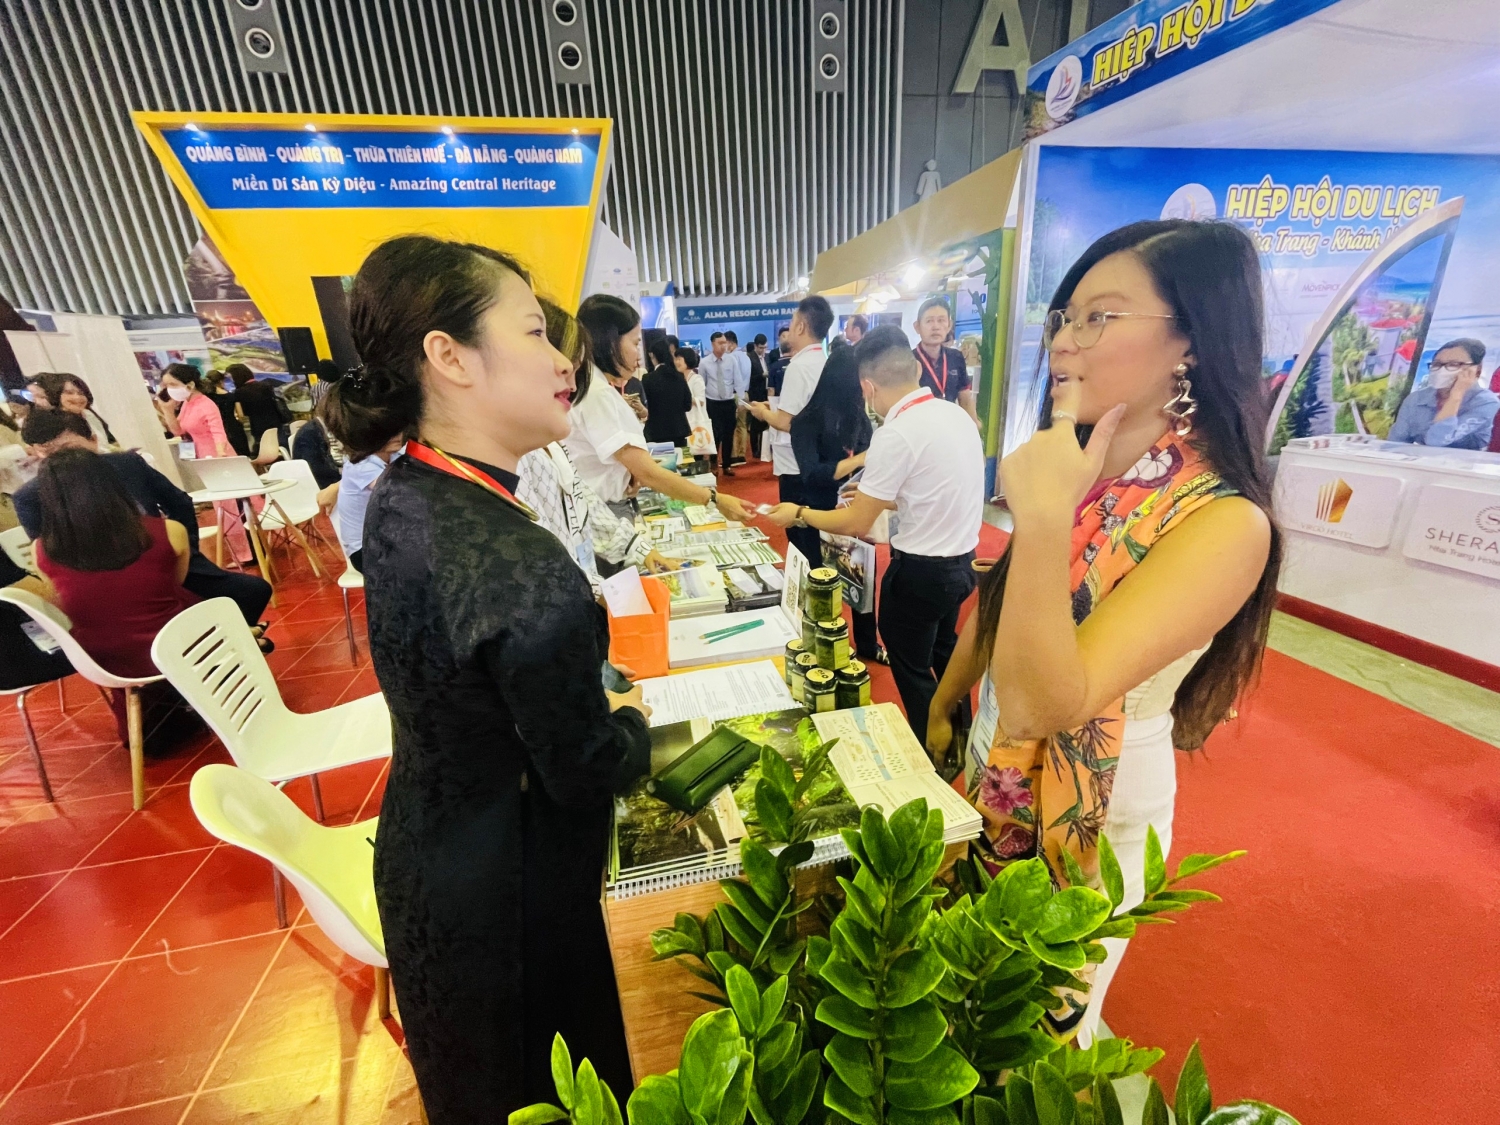 Du lịch Quảng Bình tích cực quảng bá tại Hội chợ Du lịch quốc tế ITE TP HCM 2022